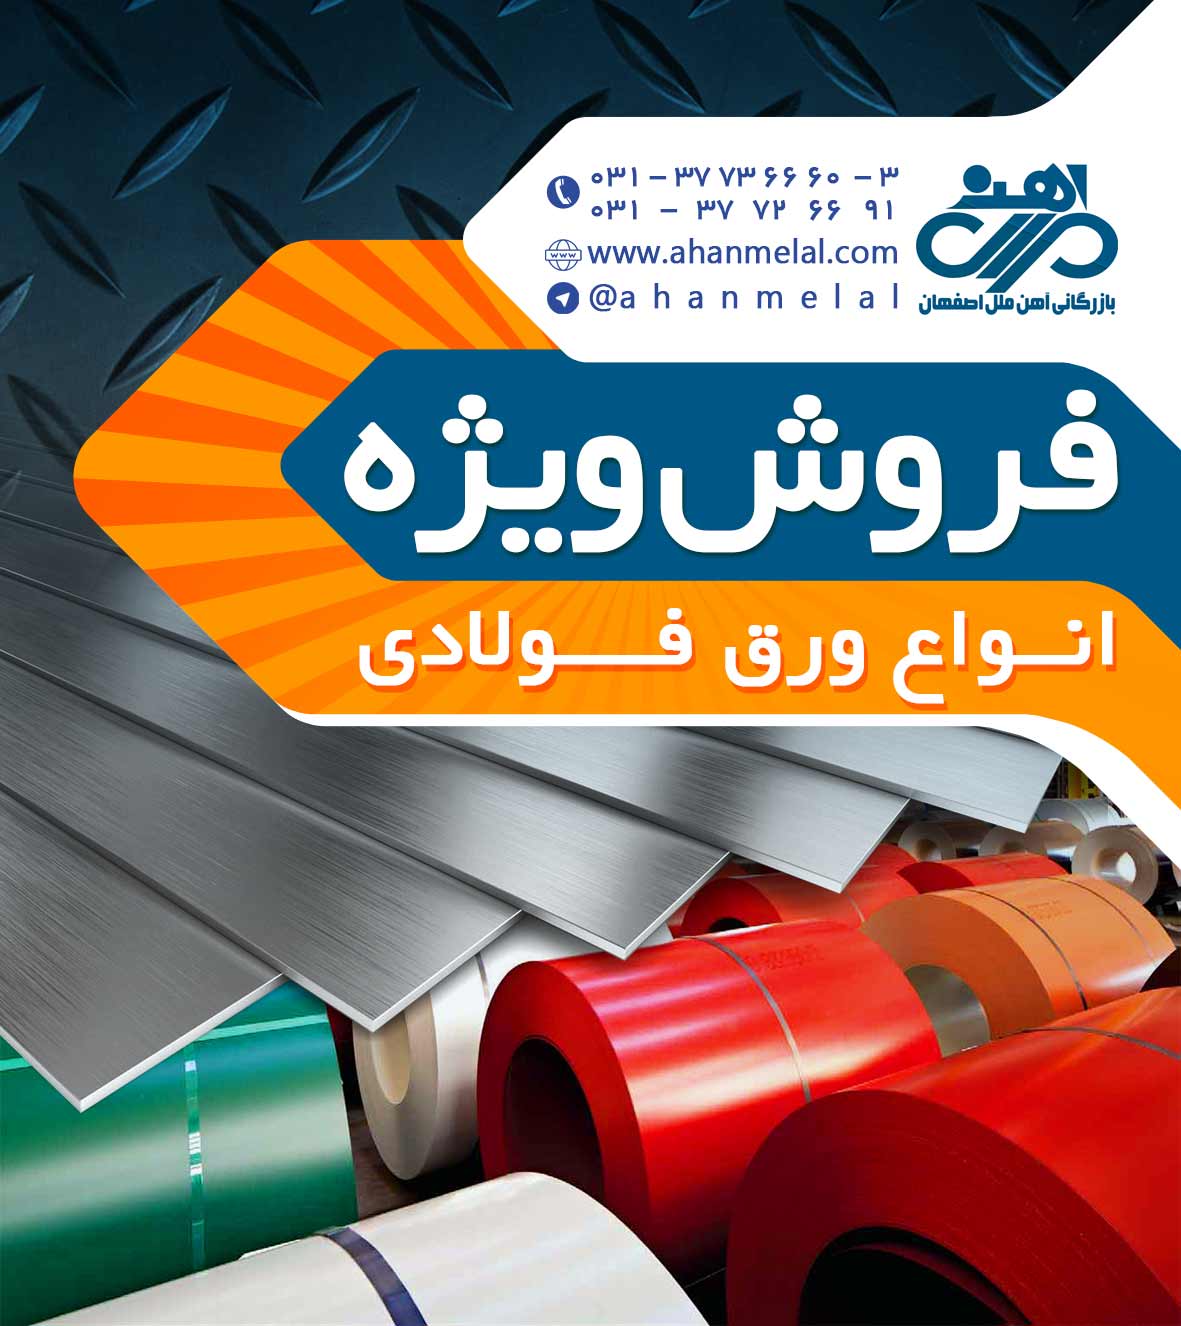 فروش ویژه انواع آهن و میلگرد در آهن ملل اصفهان